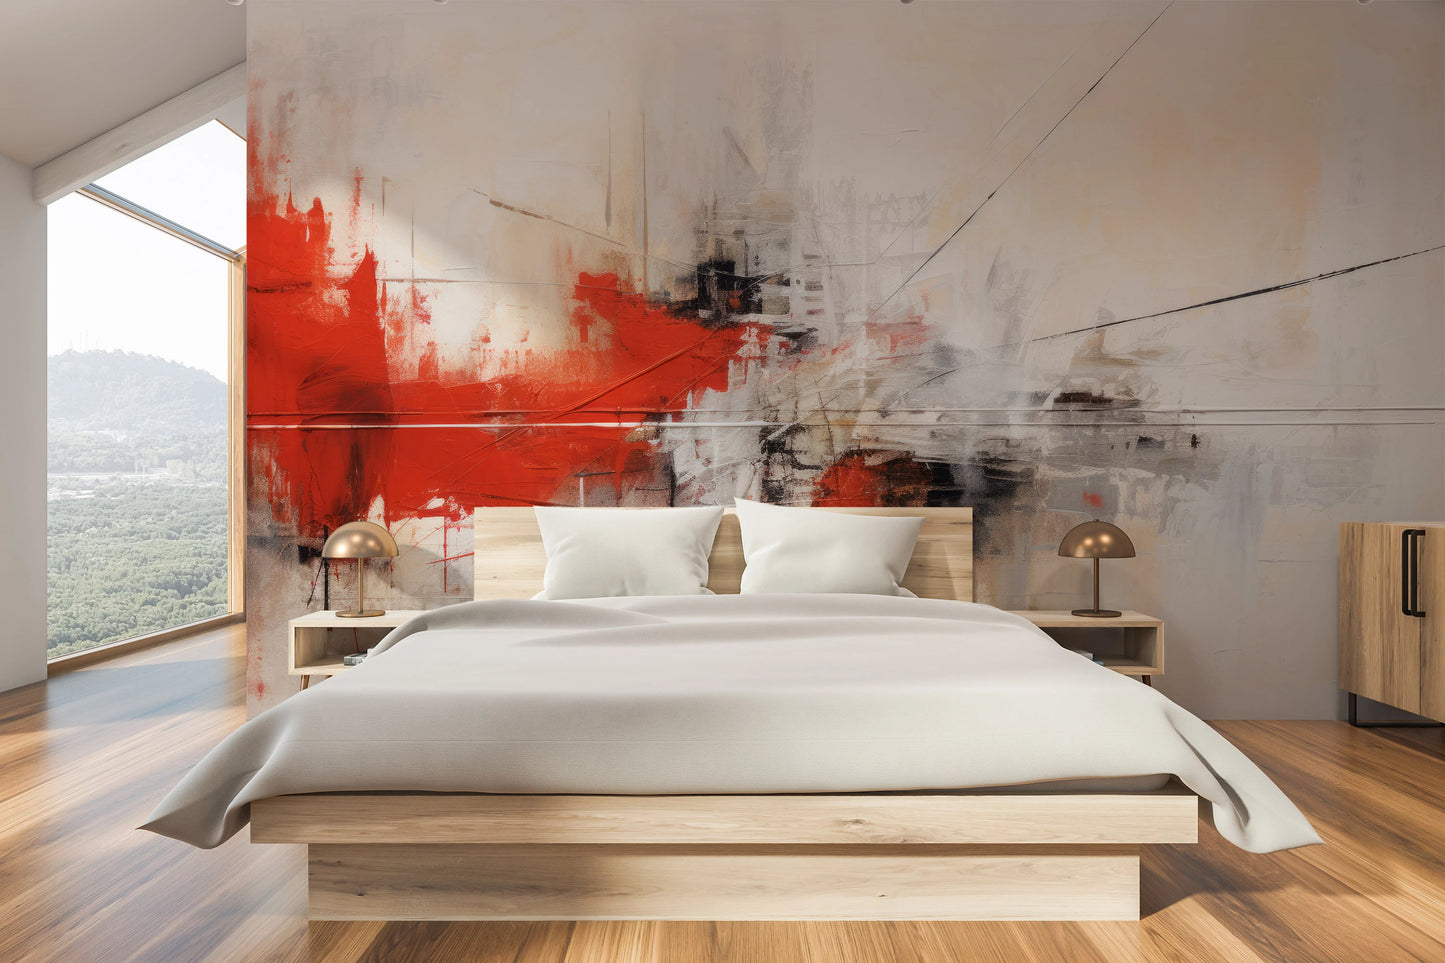 Fototapeta malowana o nazwie Dynamic Red Abstraction pokazana w aranżacji wnętrza.